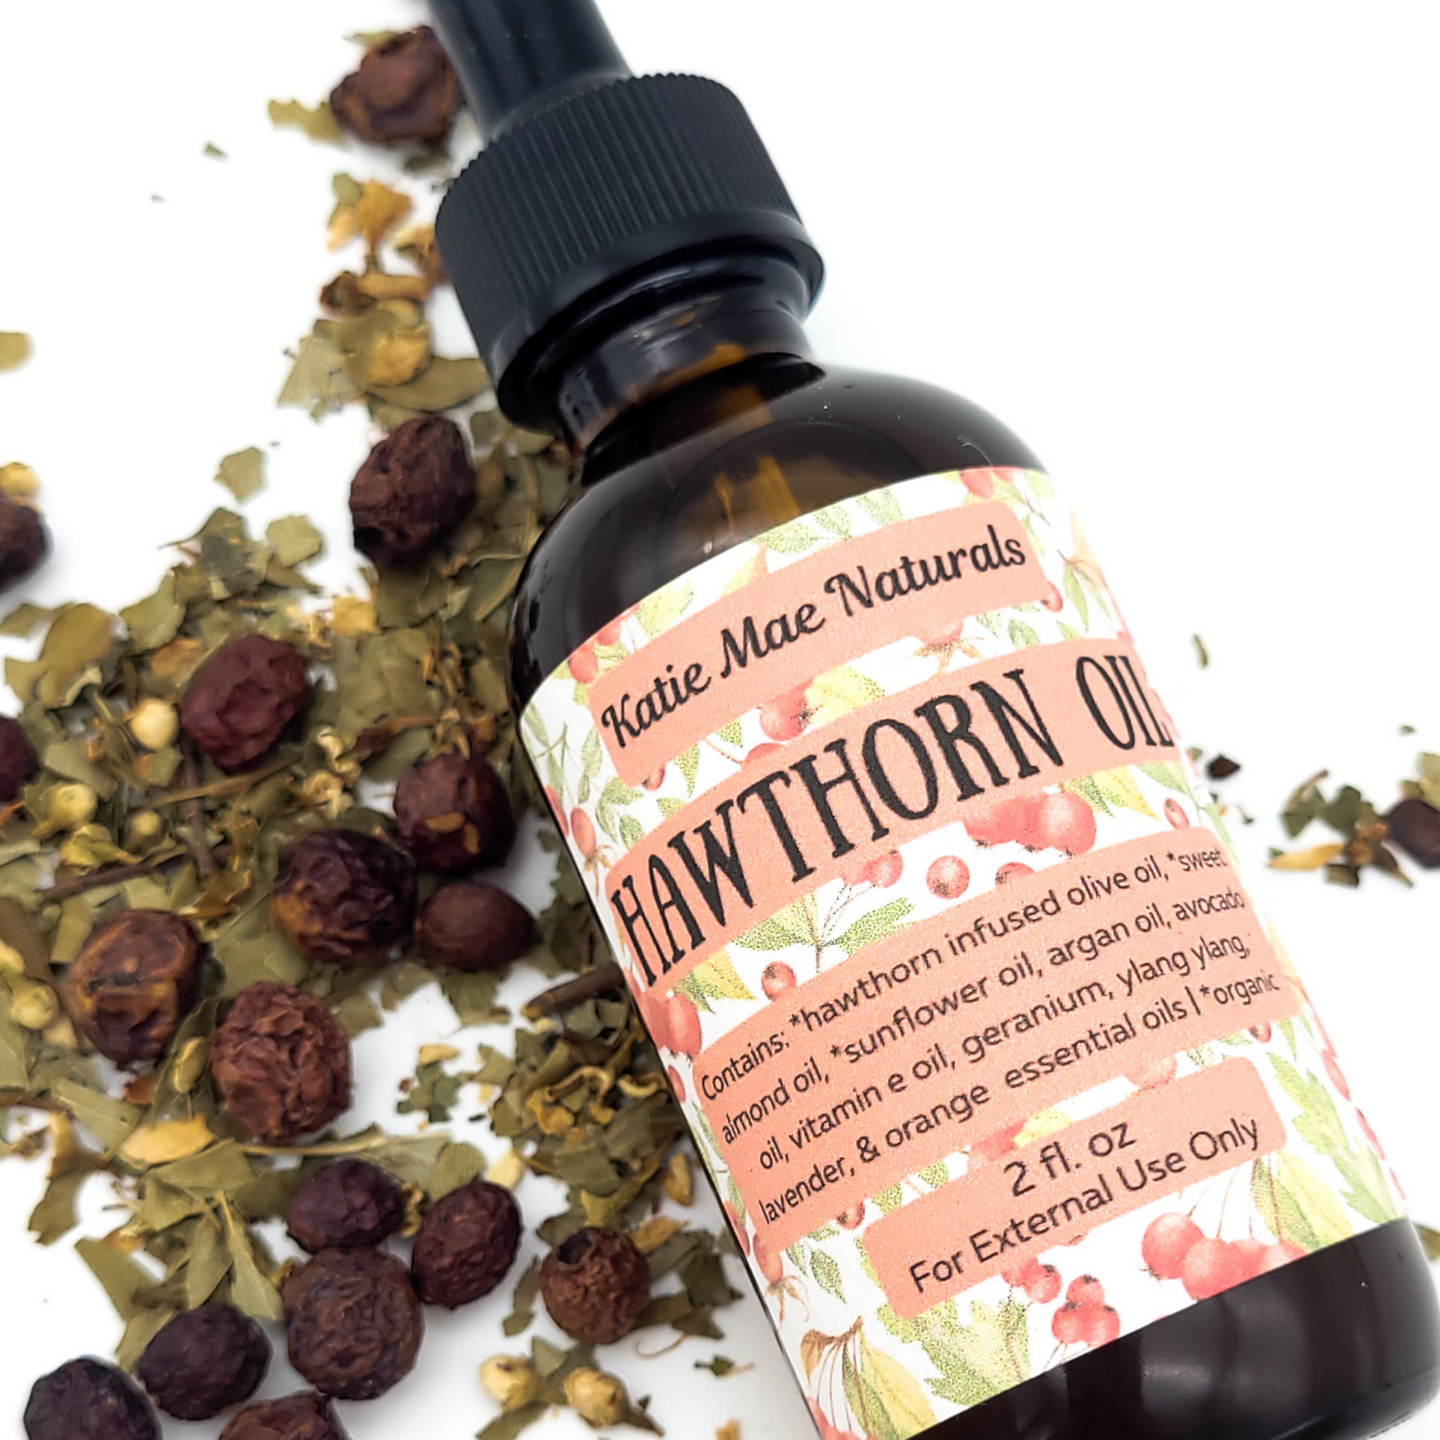 Hawthorn herbal infused oil